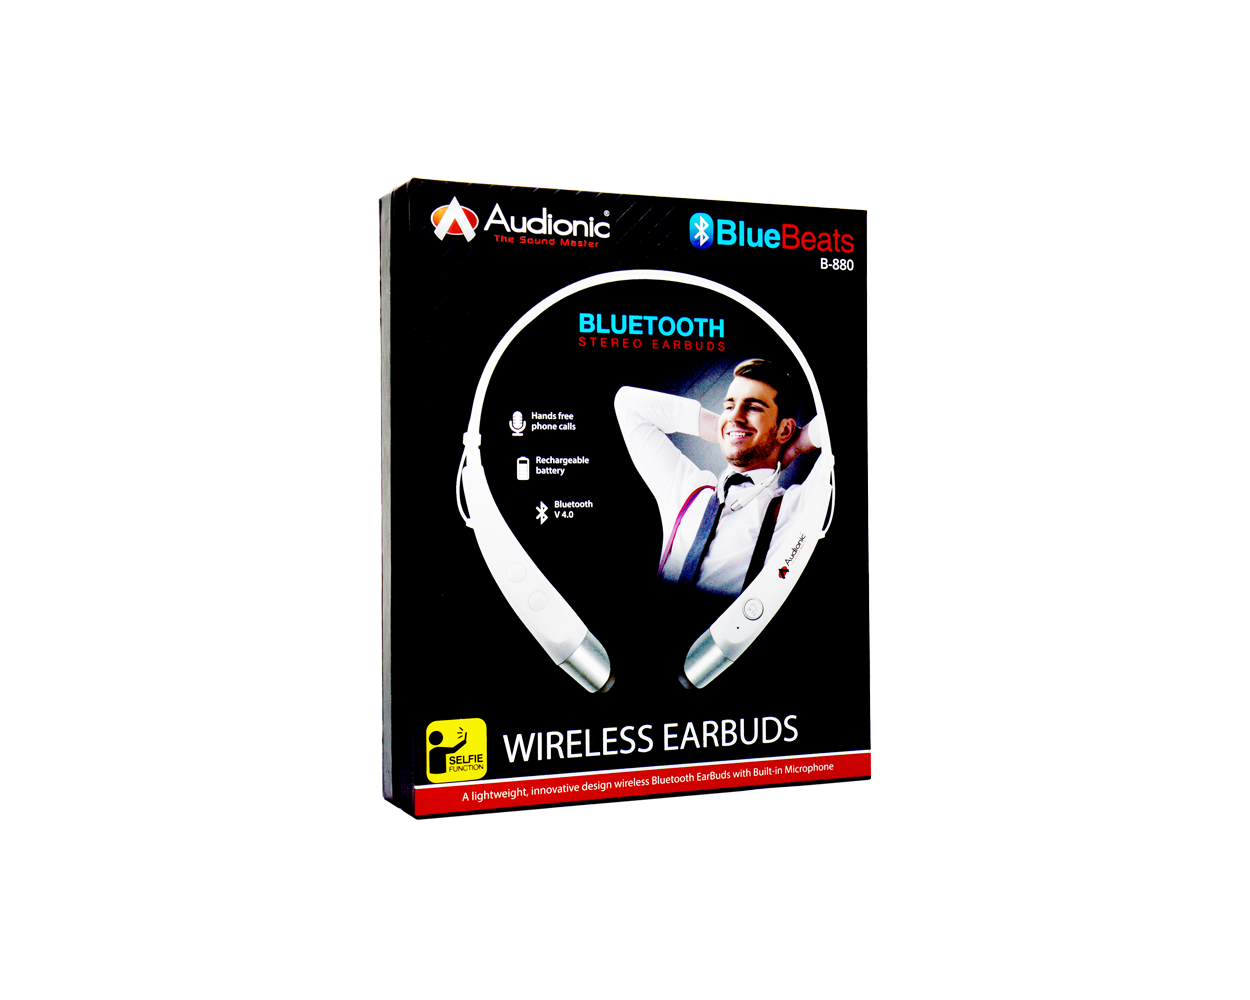 Audionic Blue Beats B-880 Wireless 